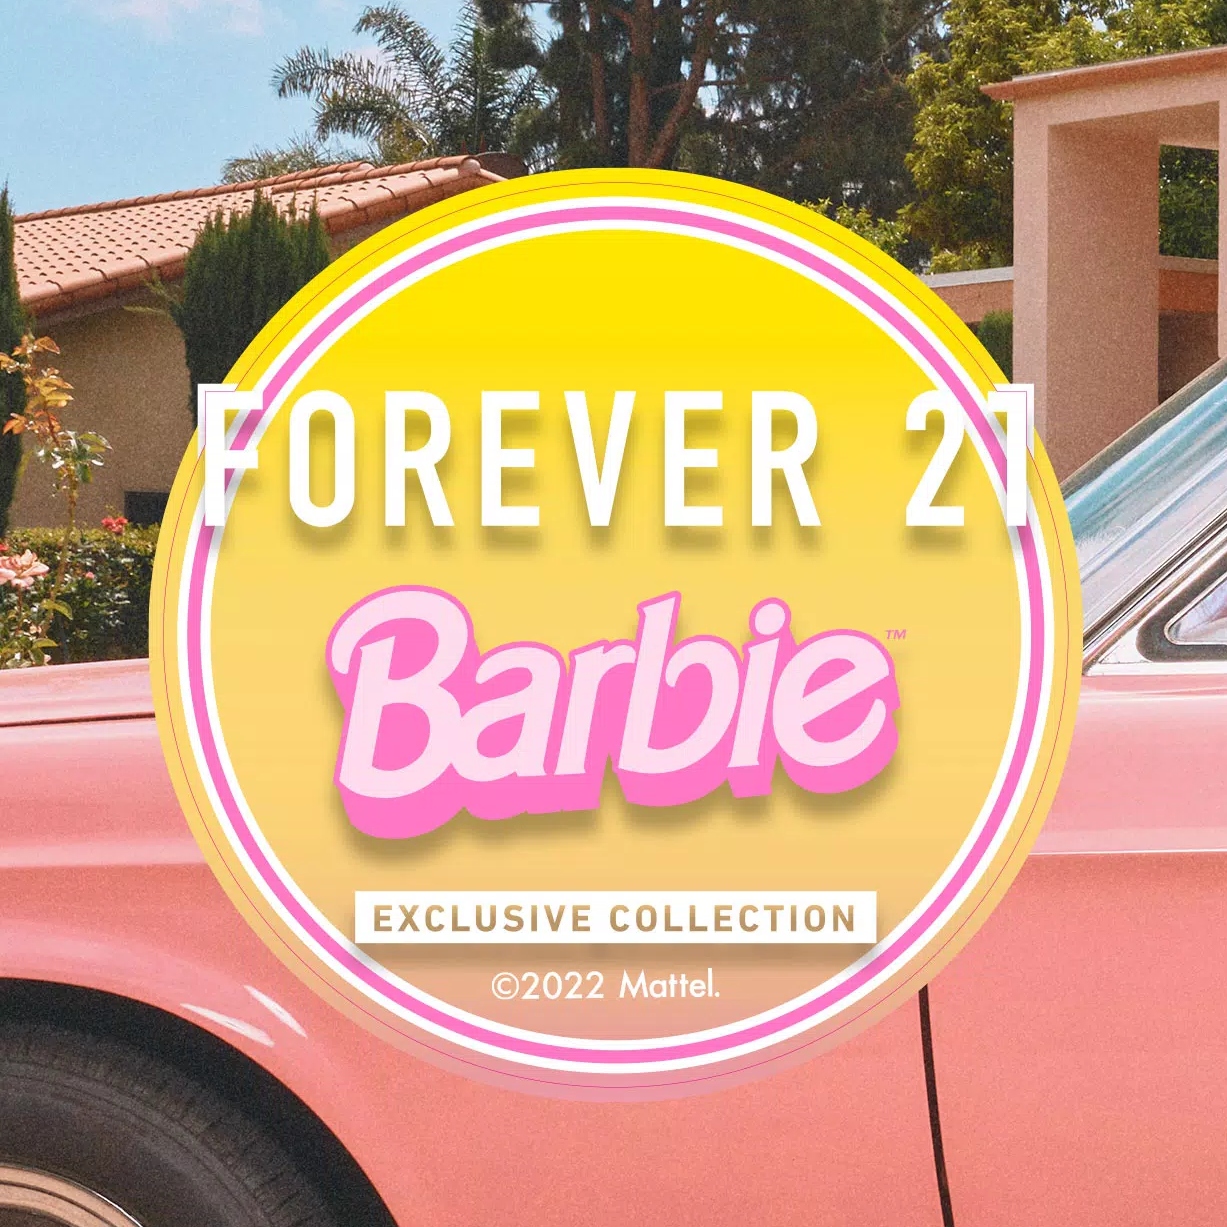 Forever 21 y Barbie lanzan colaboración en Roblox